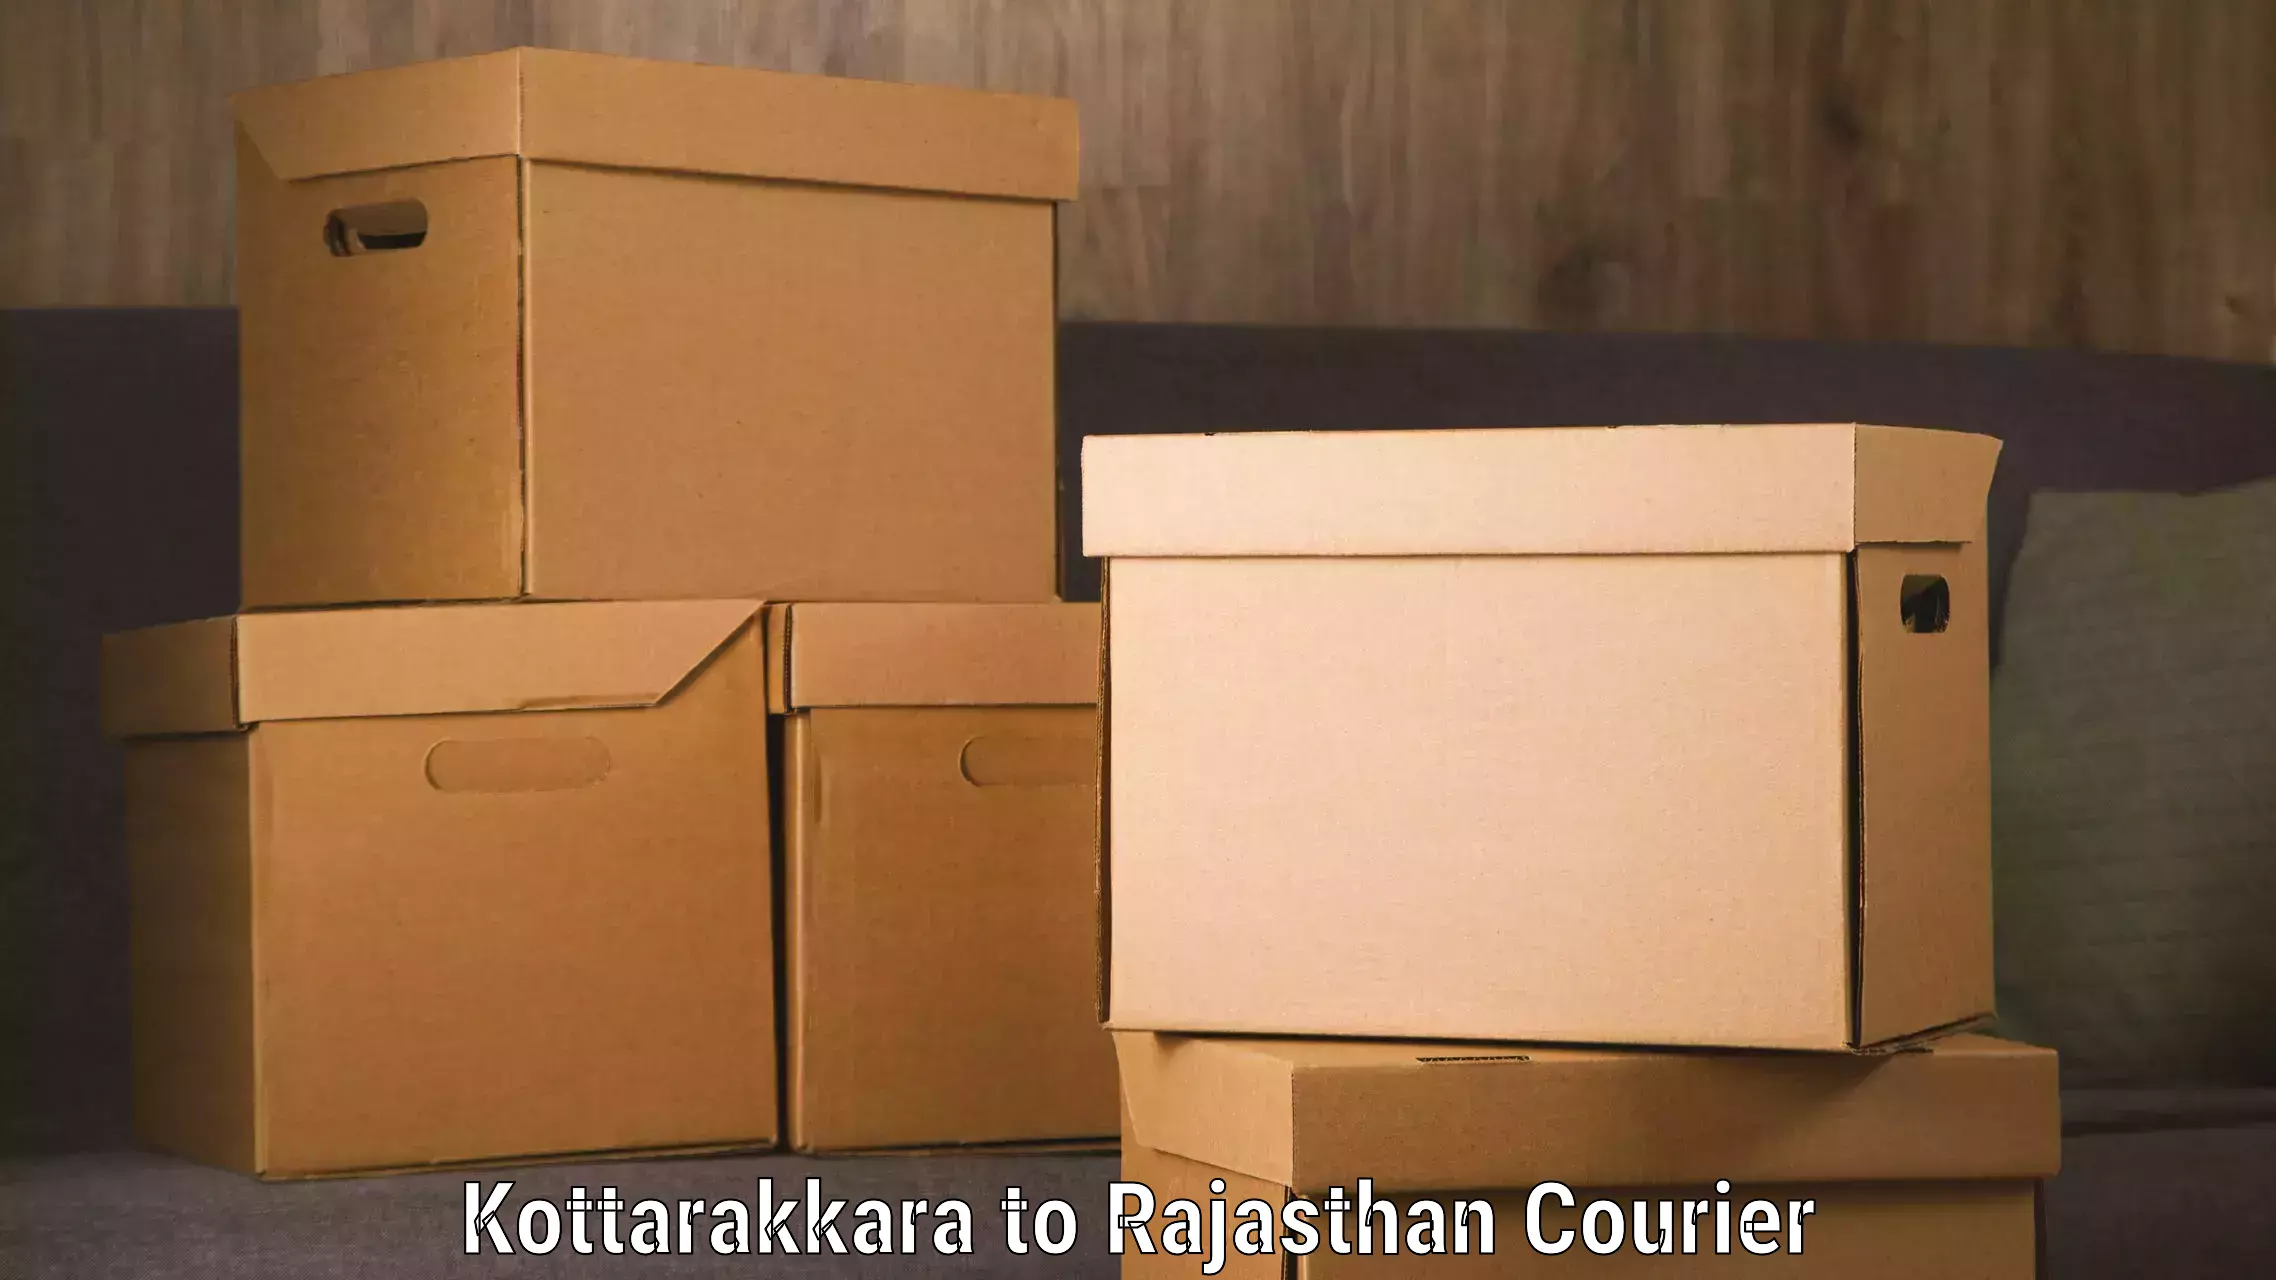 Door-to-door freight service Kottarakkara to Kotputli